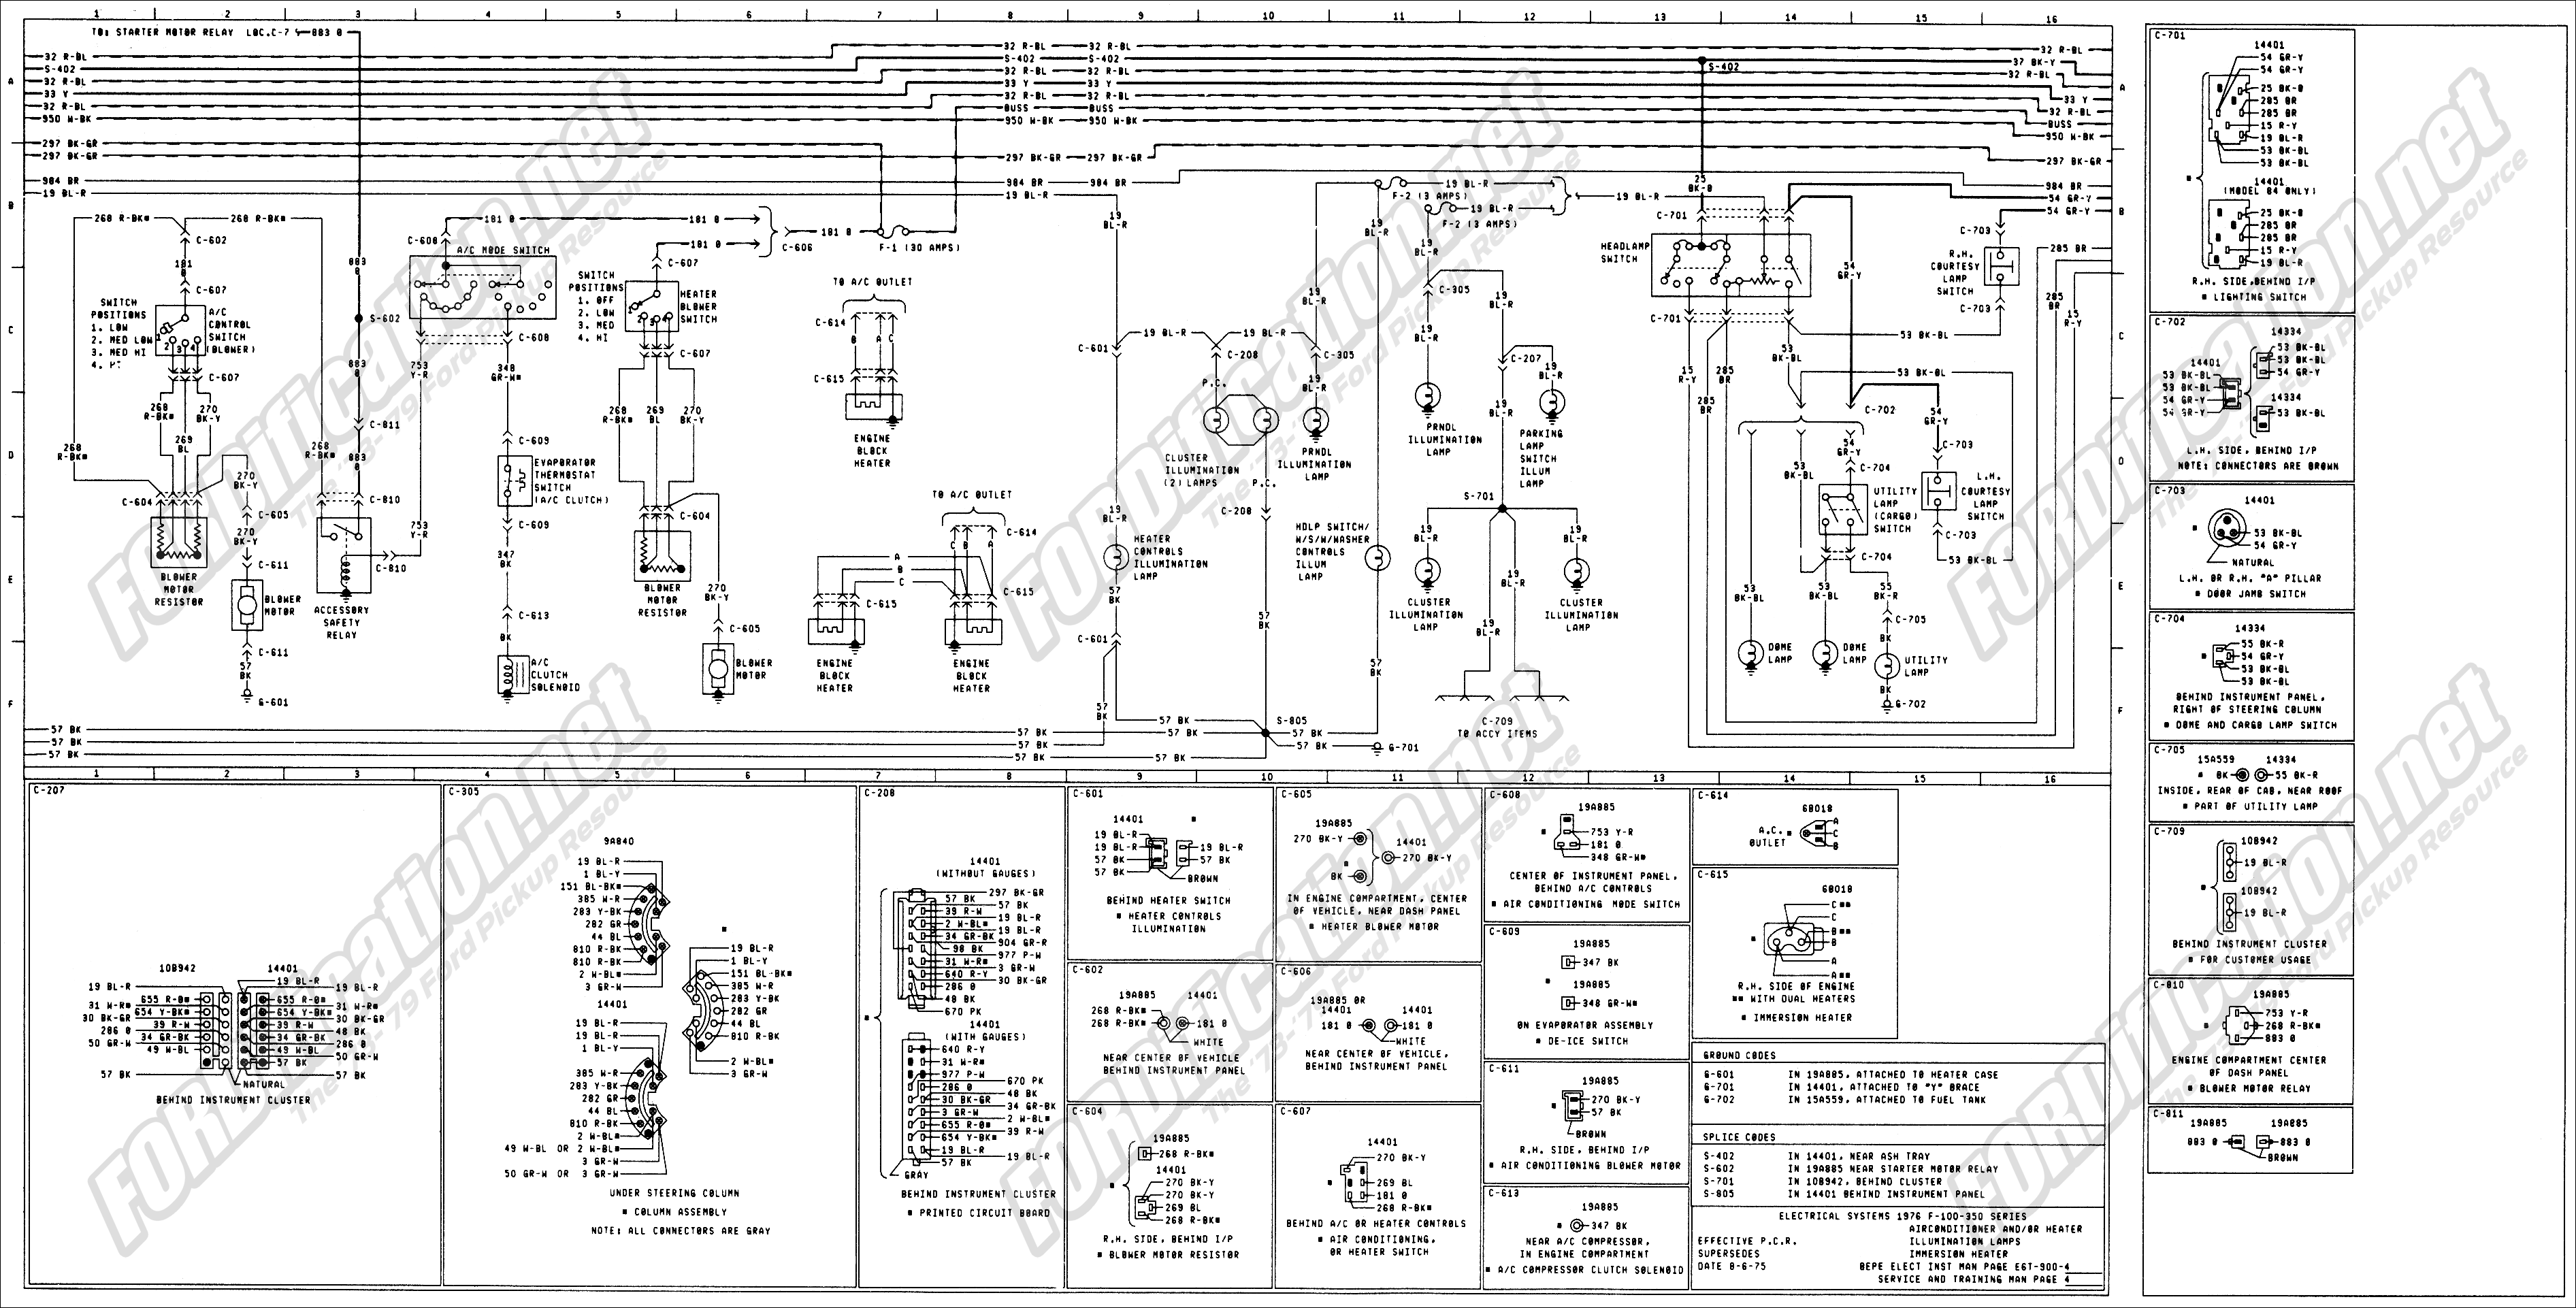 1973-1979 Ford Truck Wiring Diagrams & Schematics ...